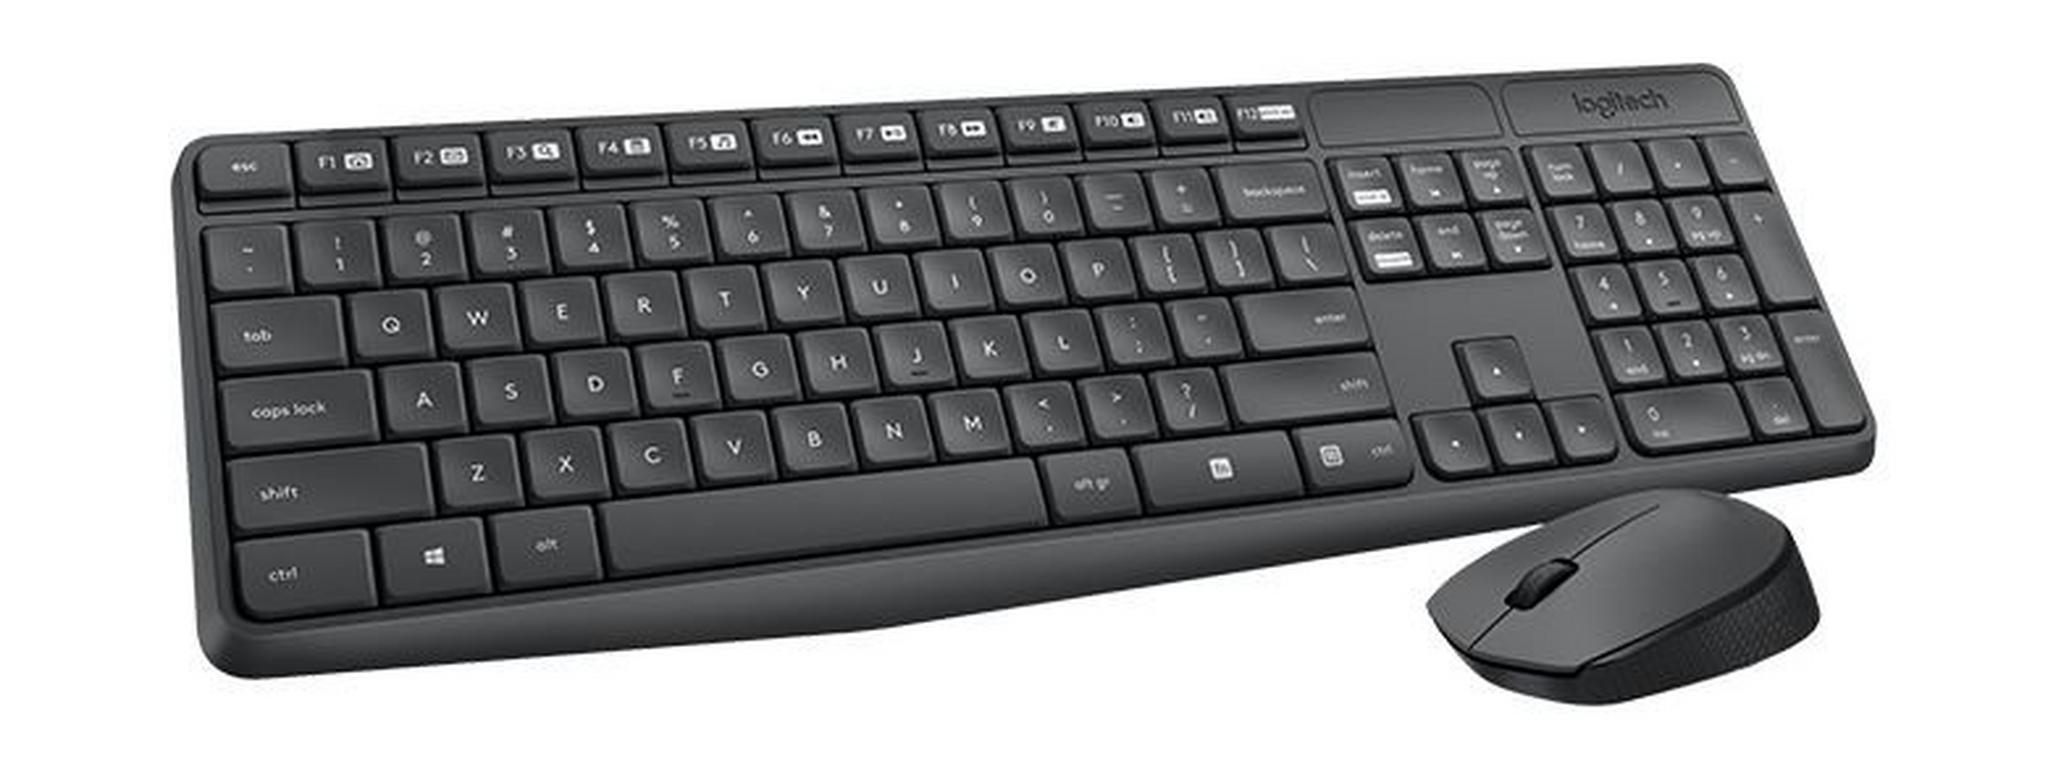 Logitech Wireless Keyboard, 920-007927 - Black